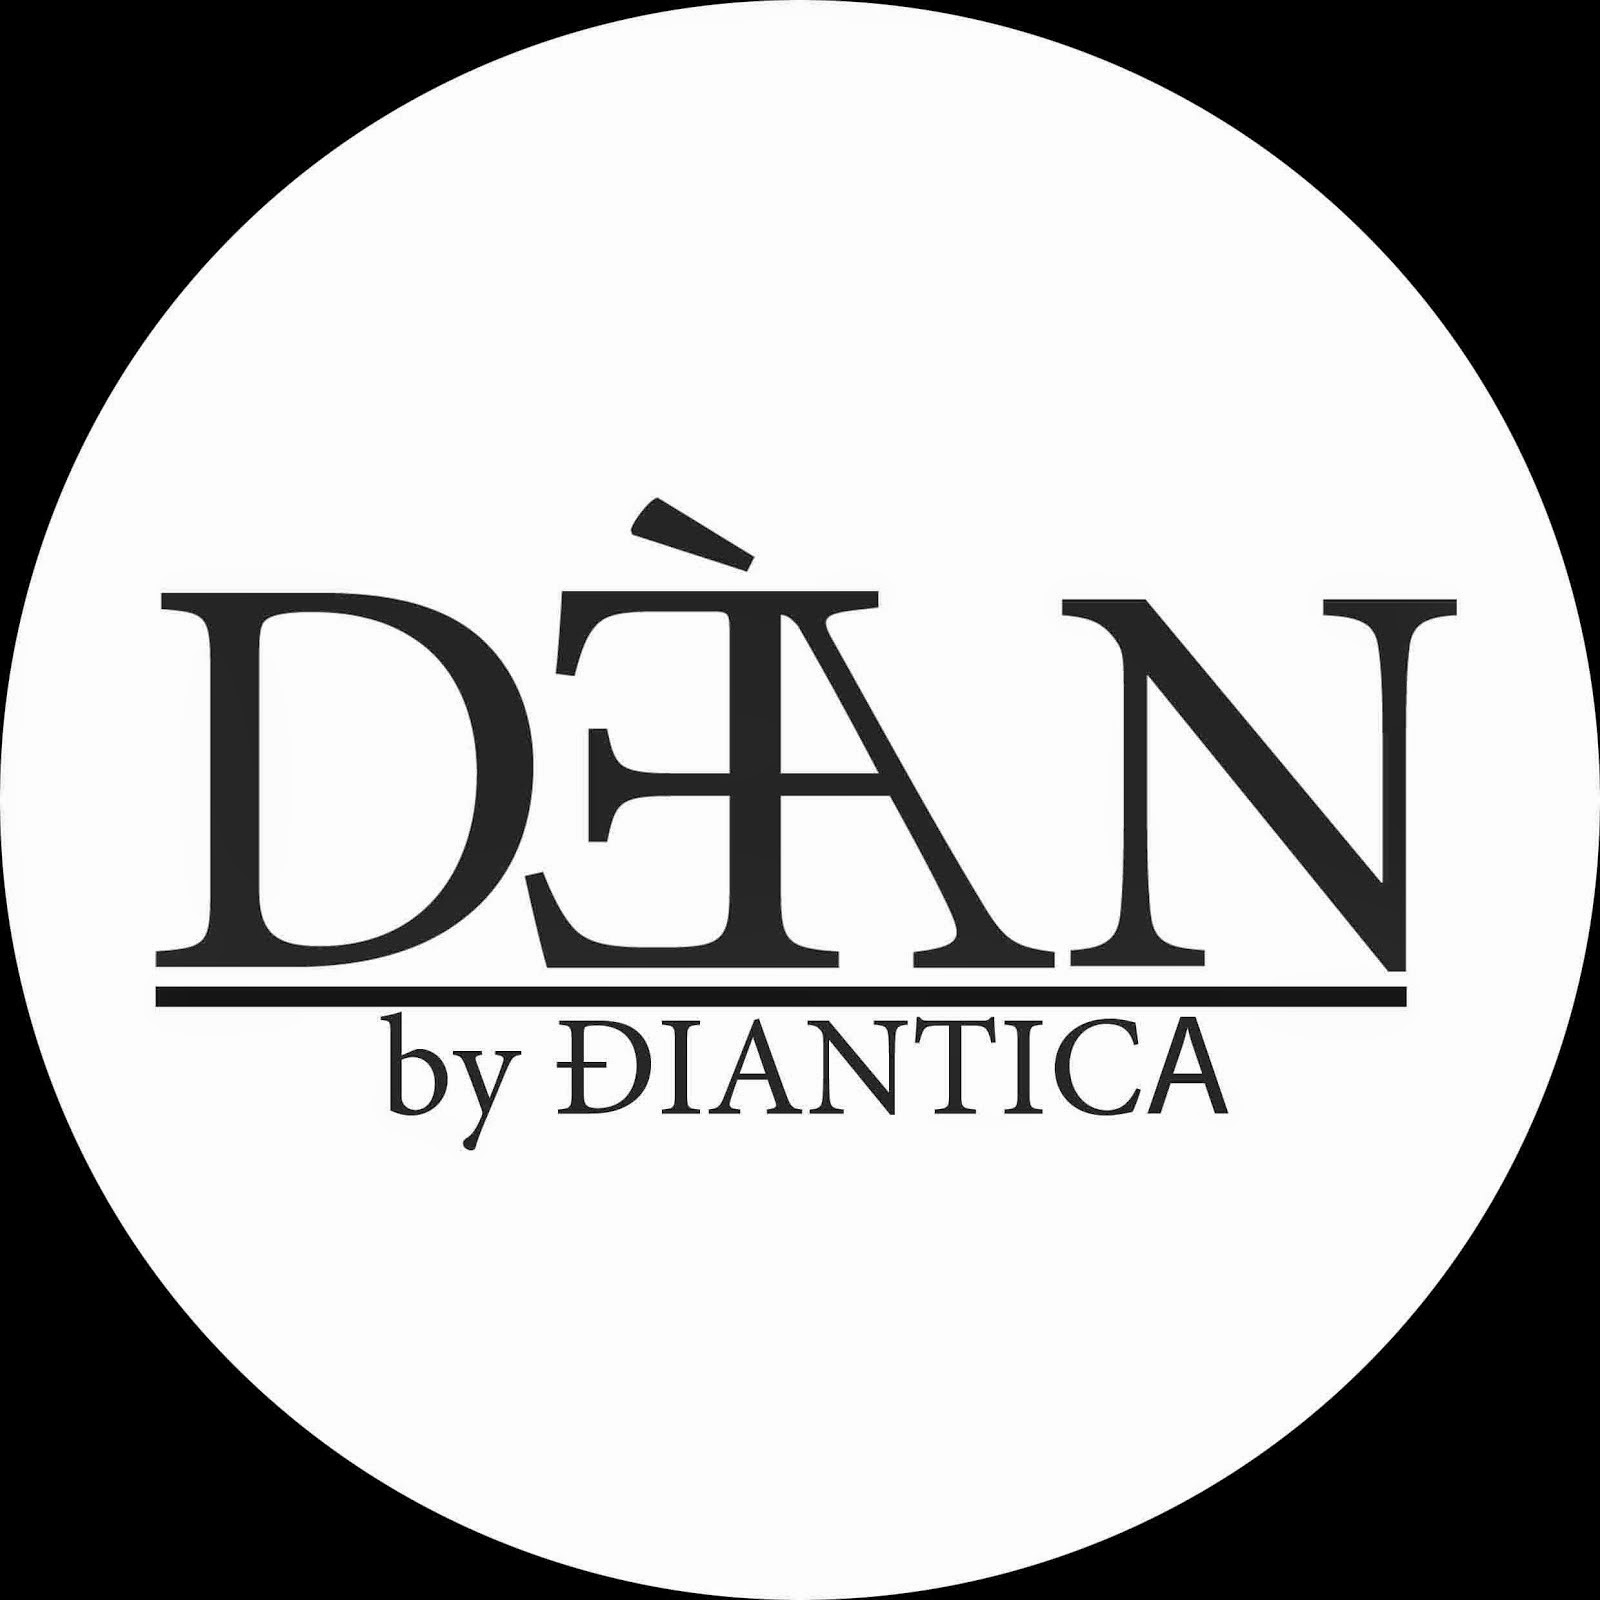 DEAN by ĐIANTICA